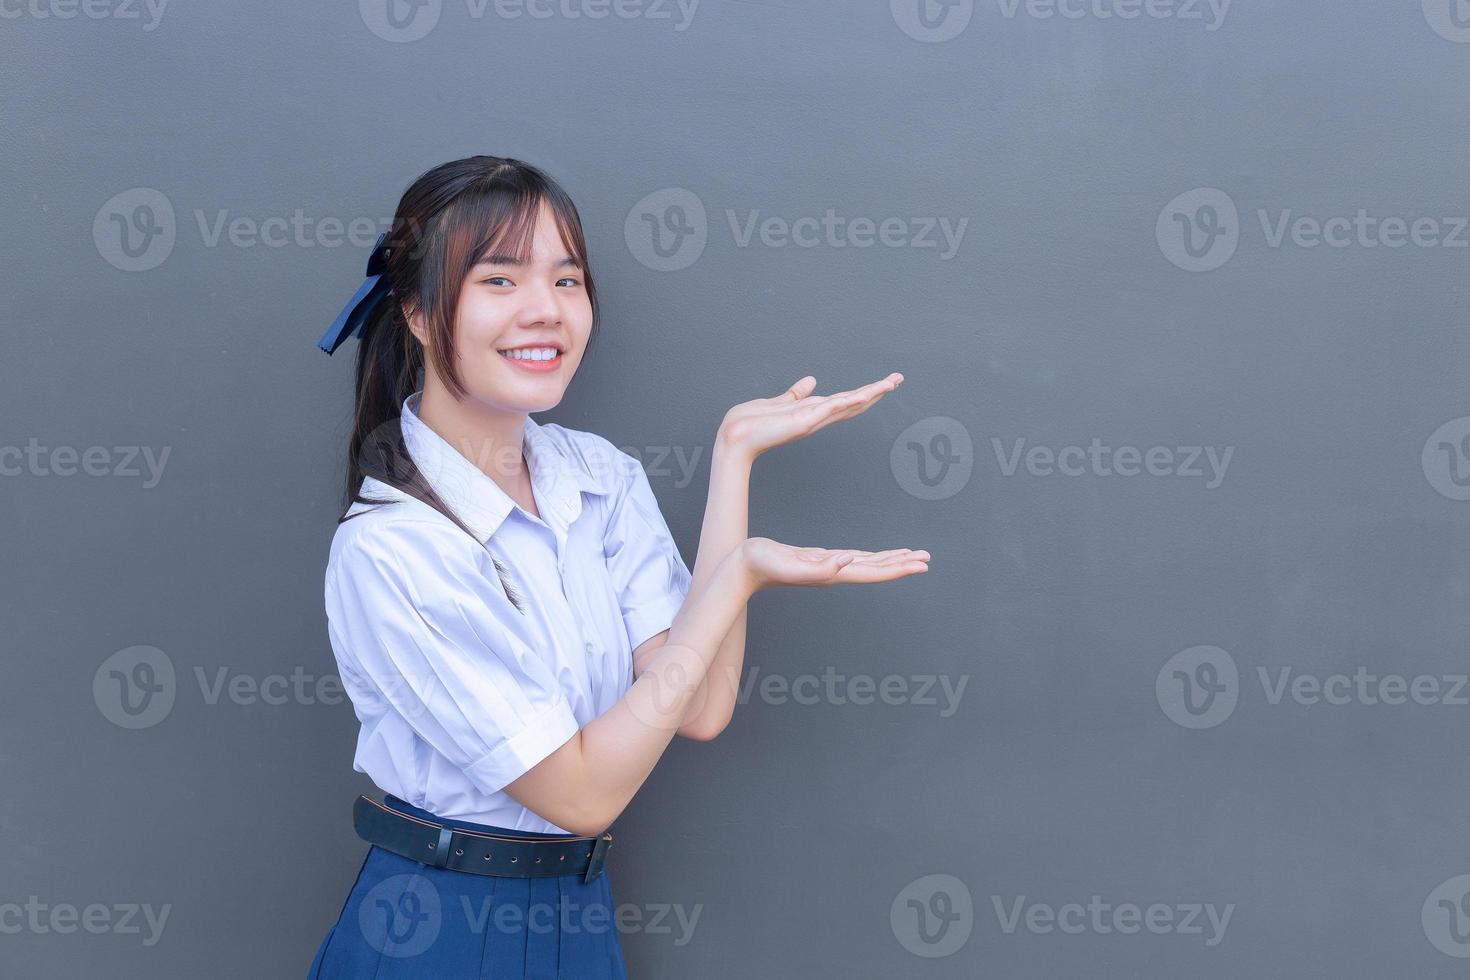 linda estudiante asiática de secundaria con uniforme escolar con sonrisas confiadas mientras mira a la cámara para presentar algo felizmente con gris en el fondo. foto